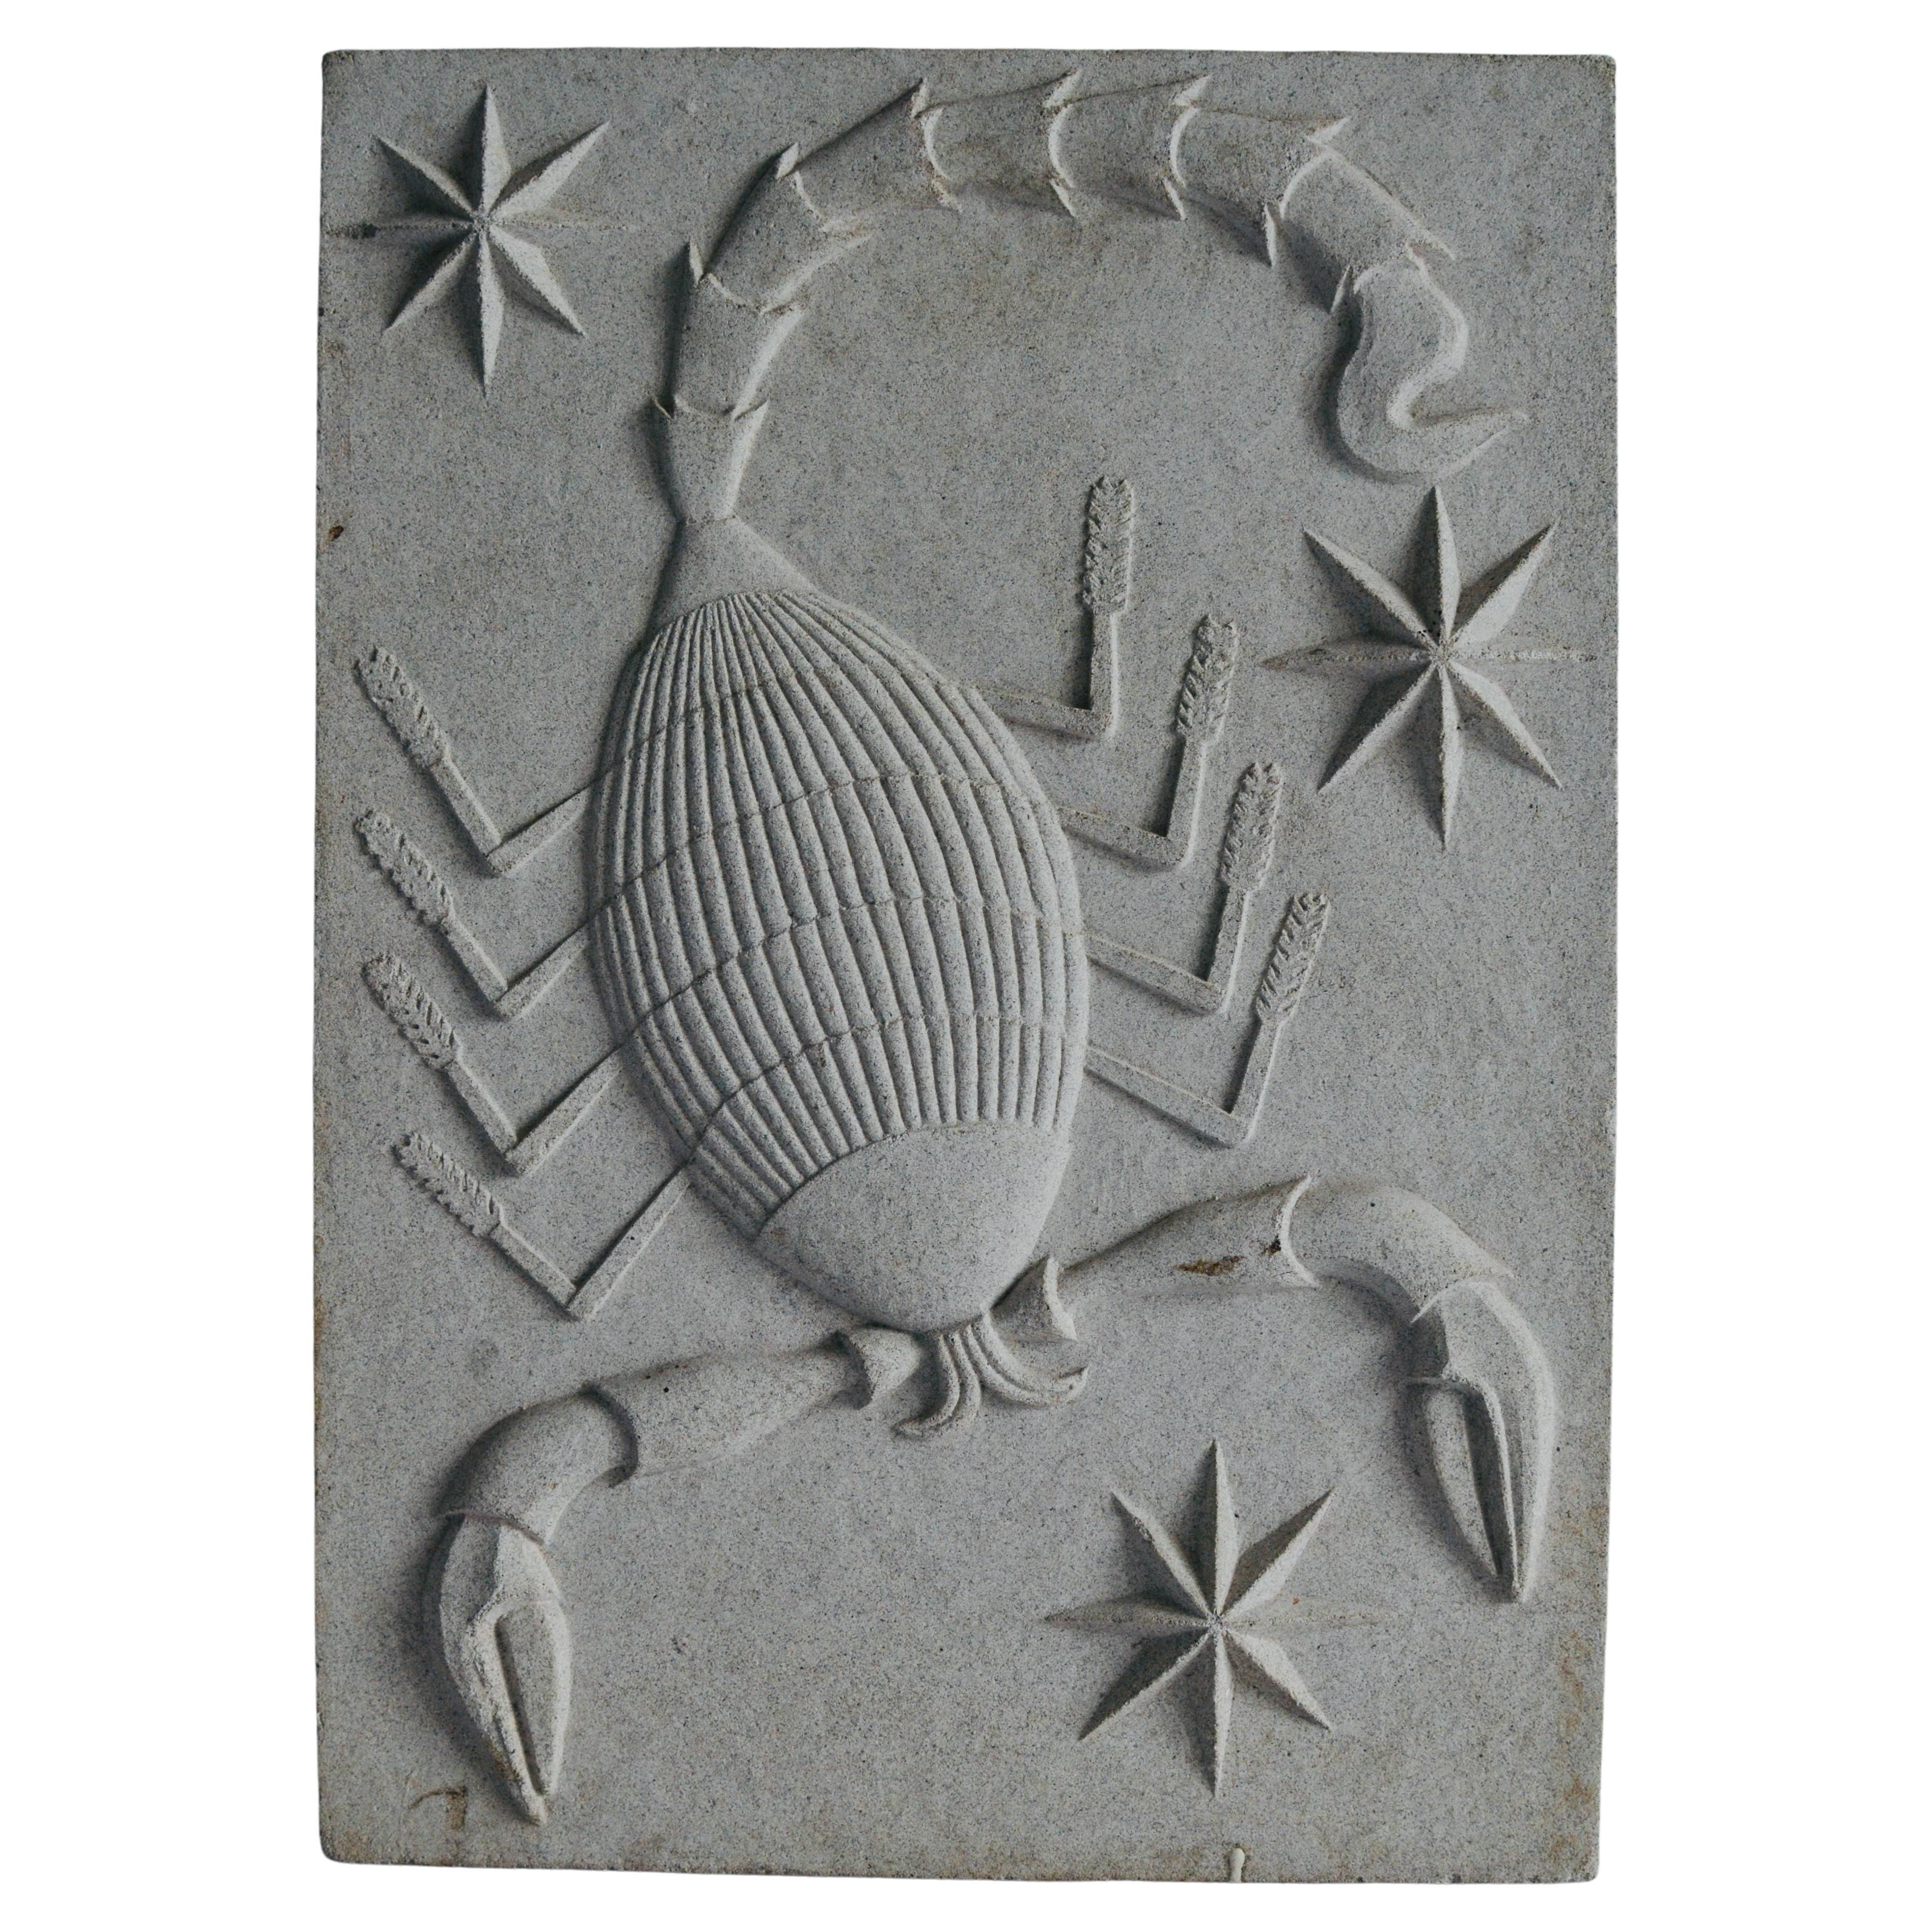 Zodiac Artificial Stone Relief Sign of Scorpio, c. 1940